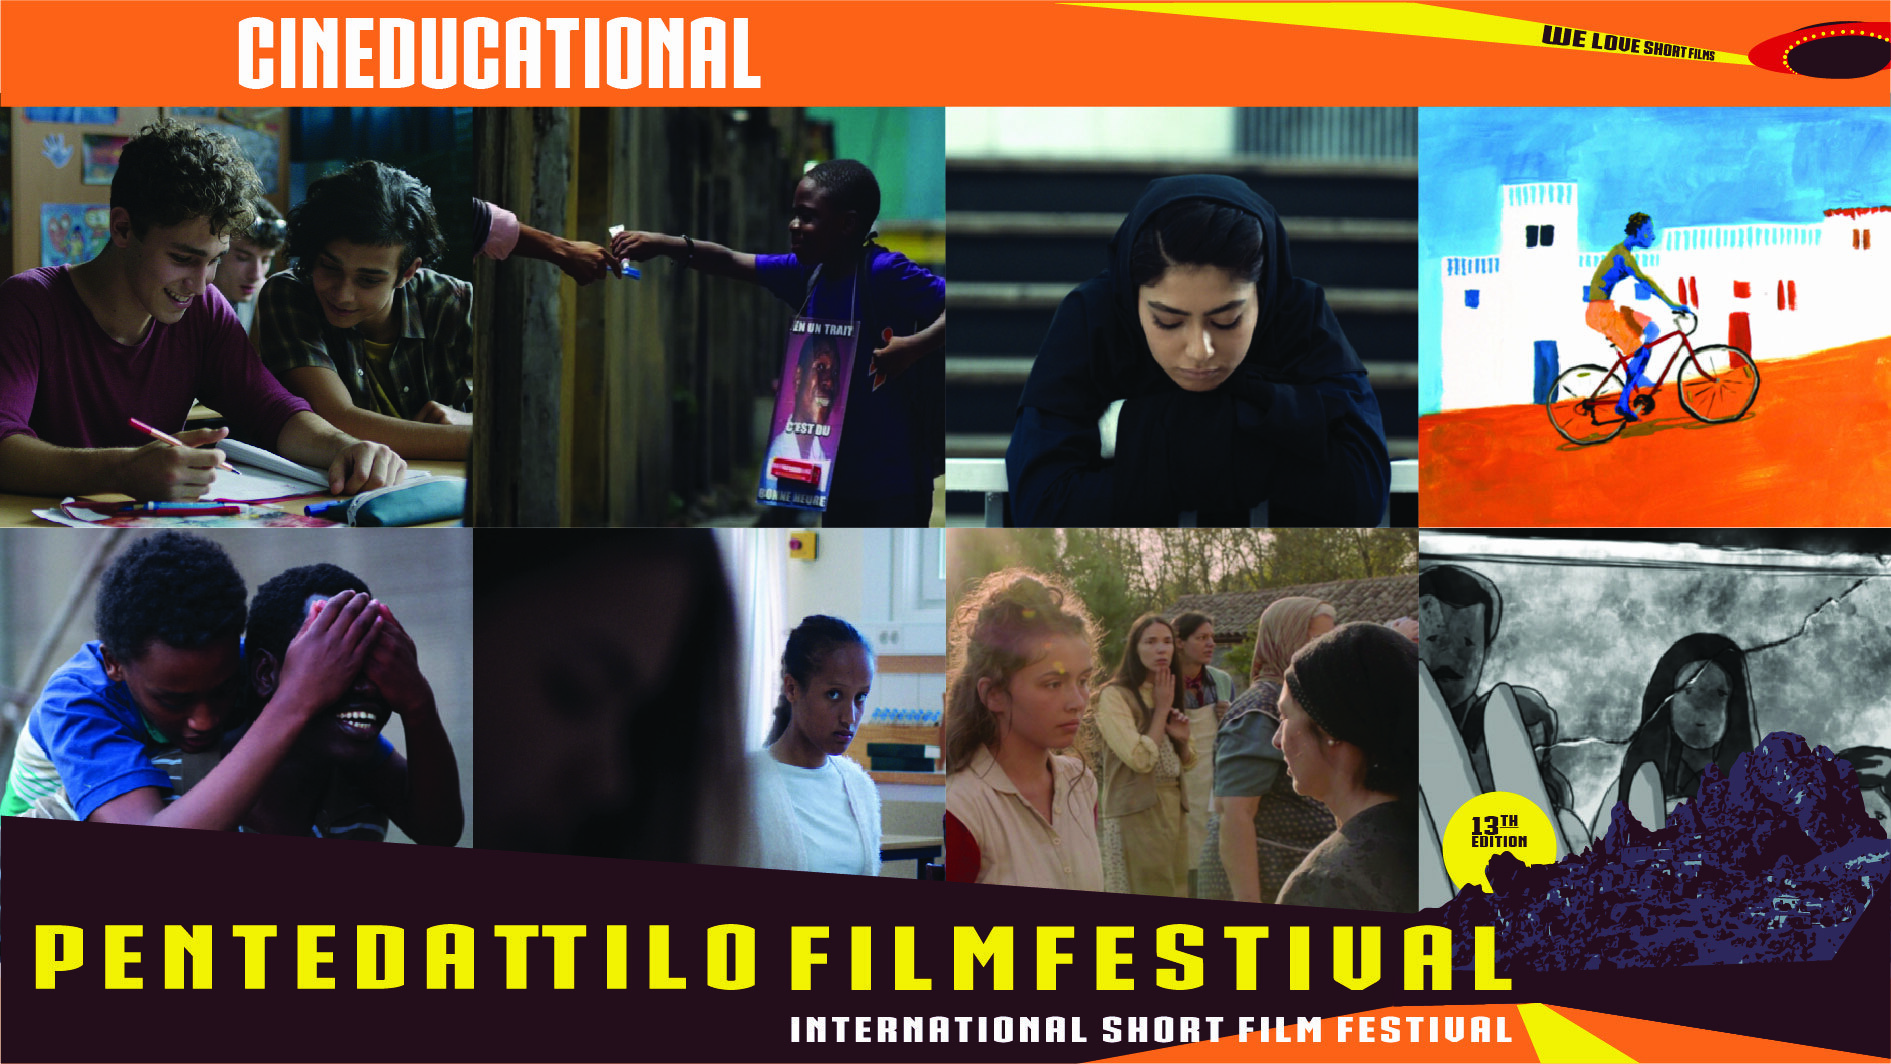 Pentedattilo Film Festival